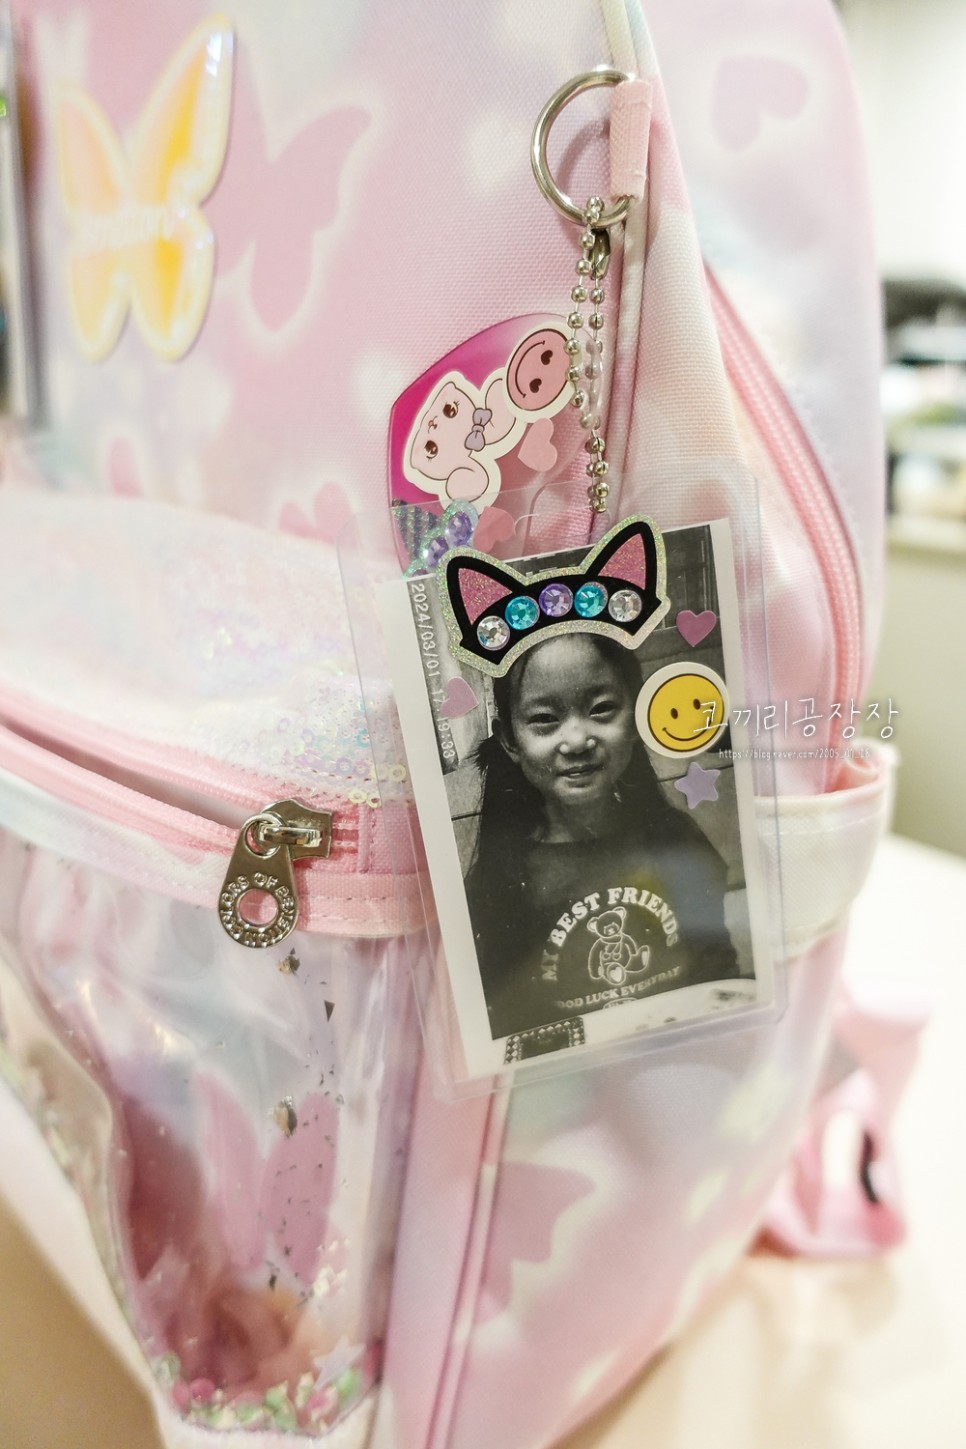 초등여아장난감 핑크아미 블랑데코포카키링으로 포토카드만들기 후기